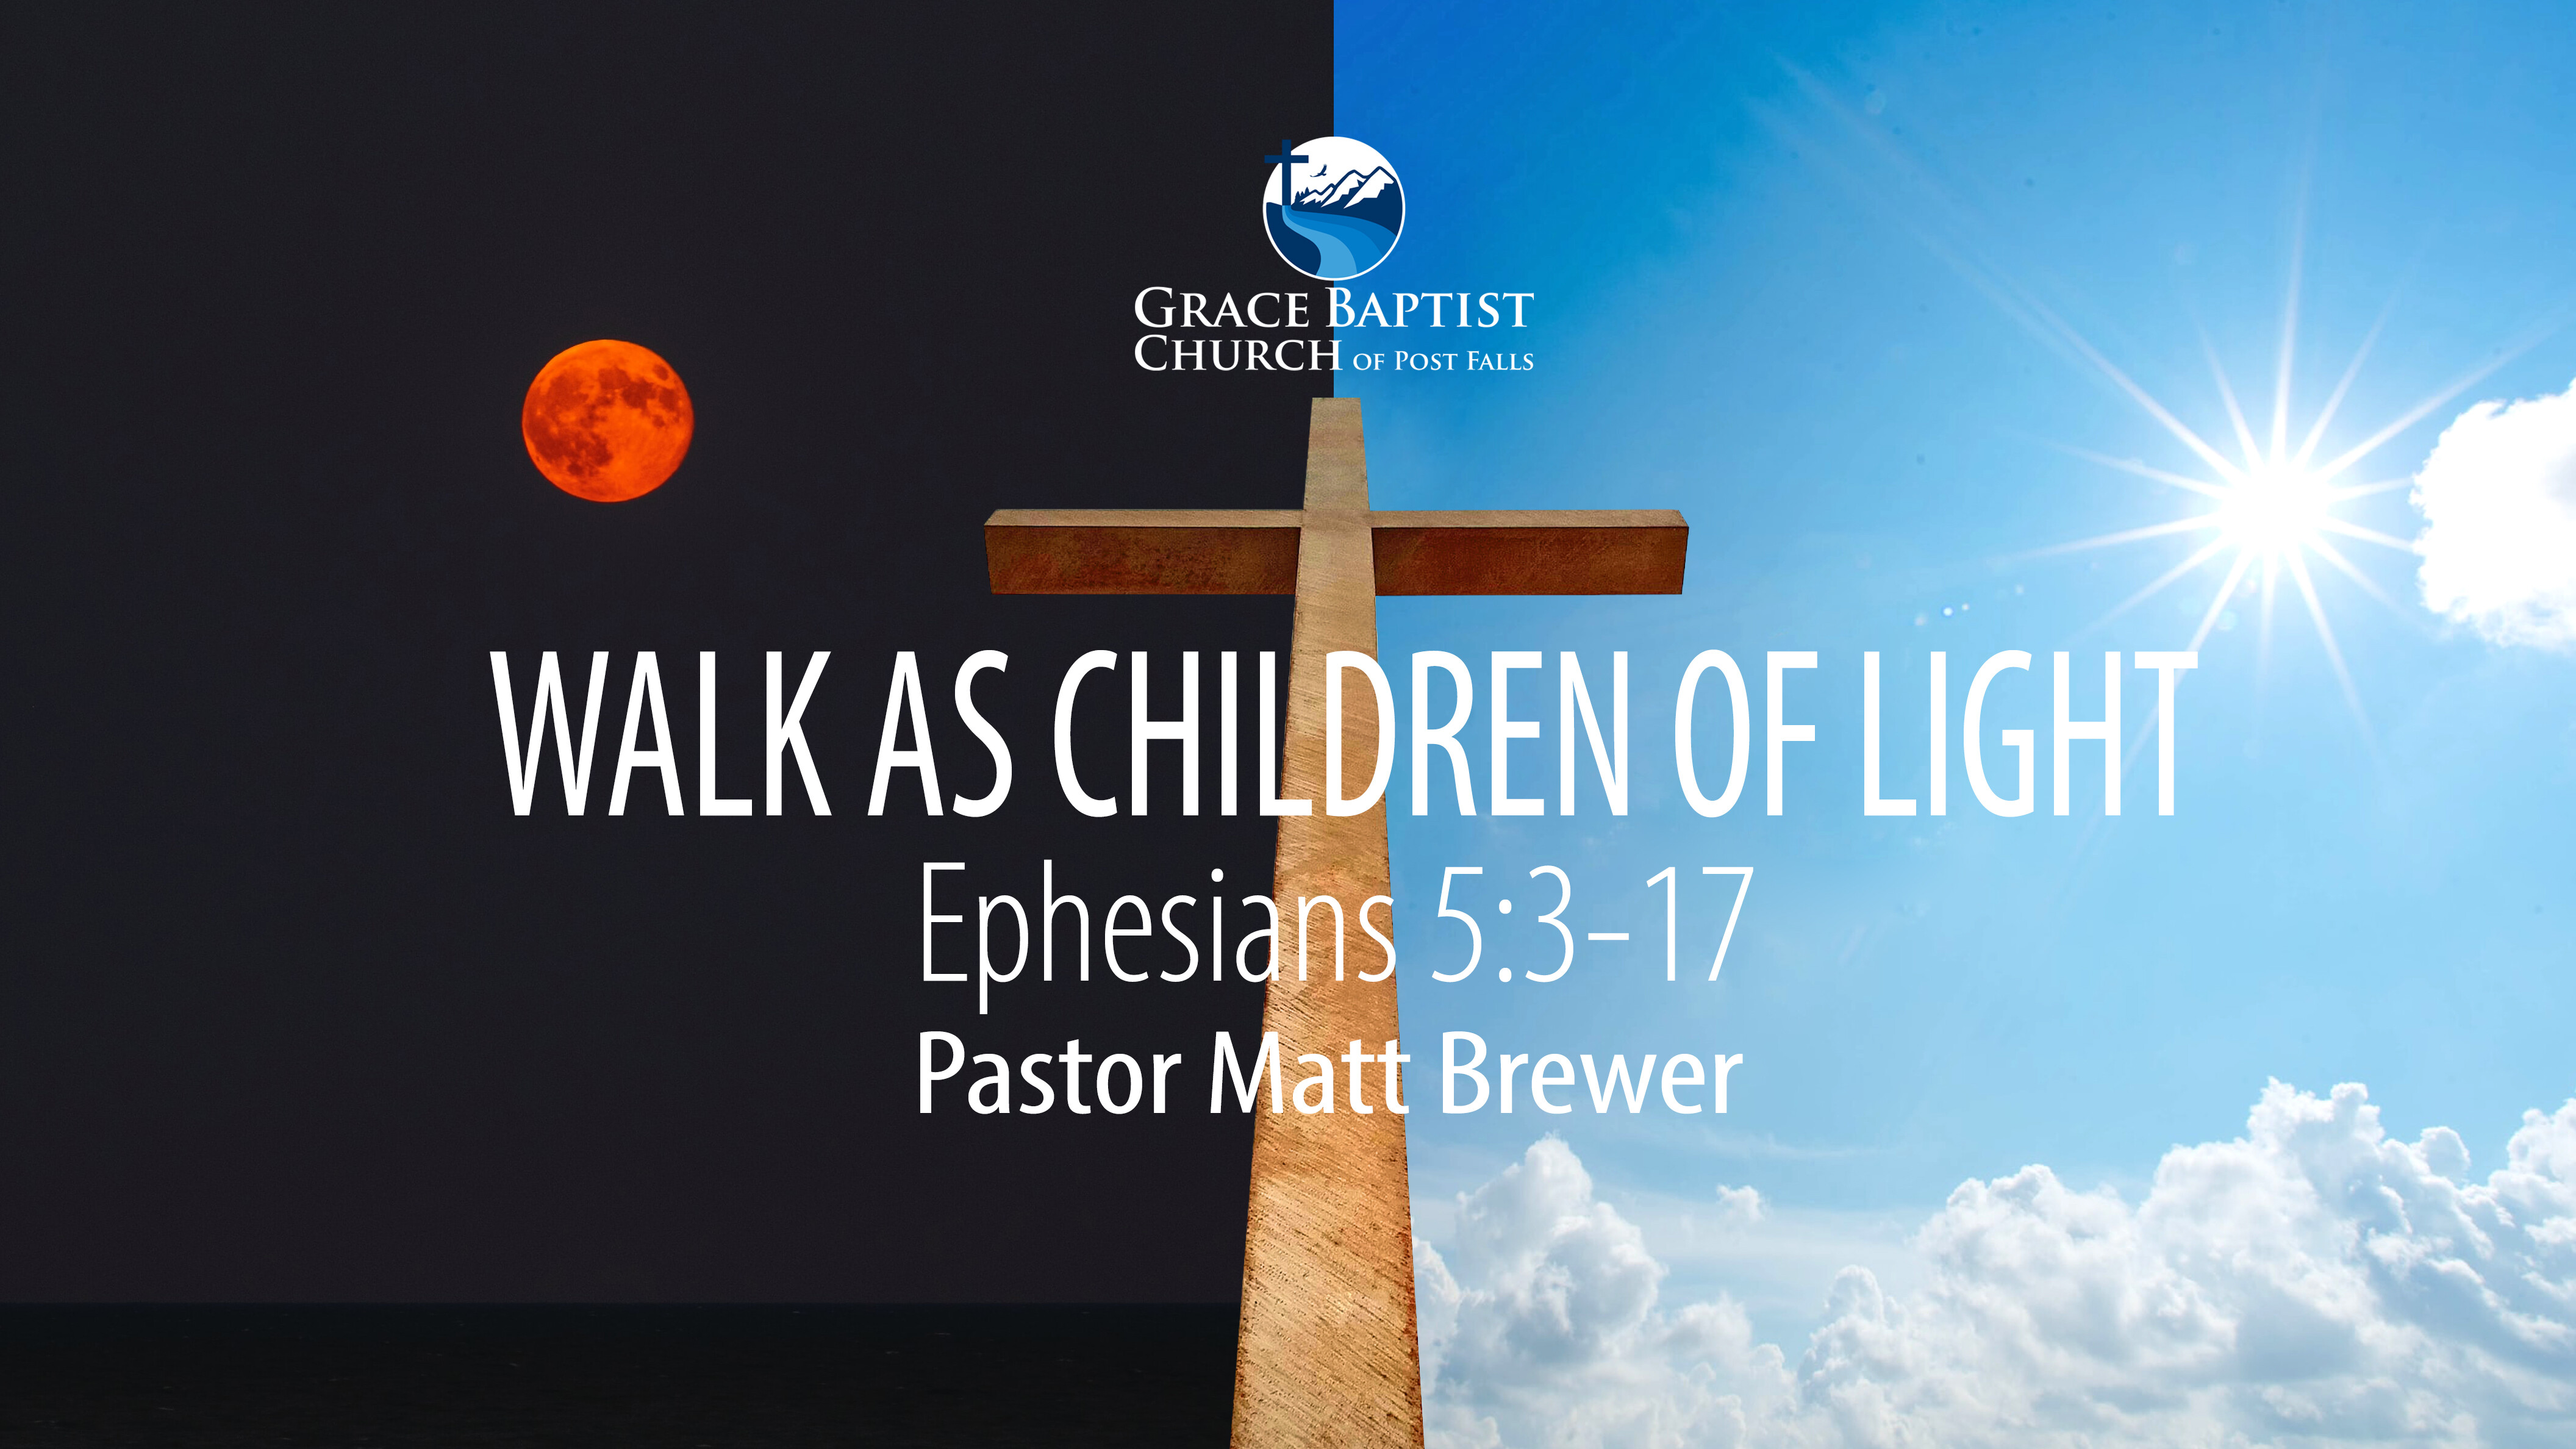 WALK AS CHILDREN OF LIGHT